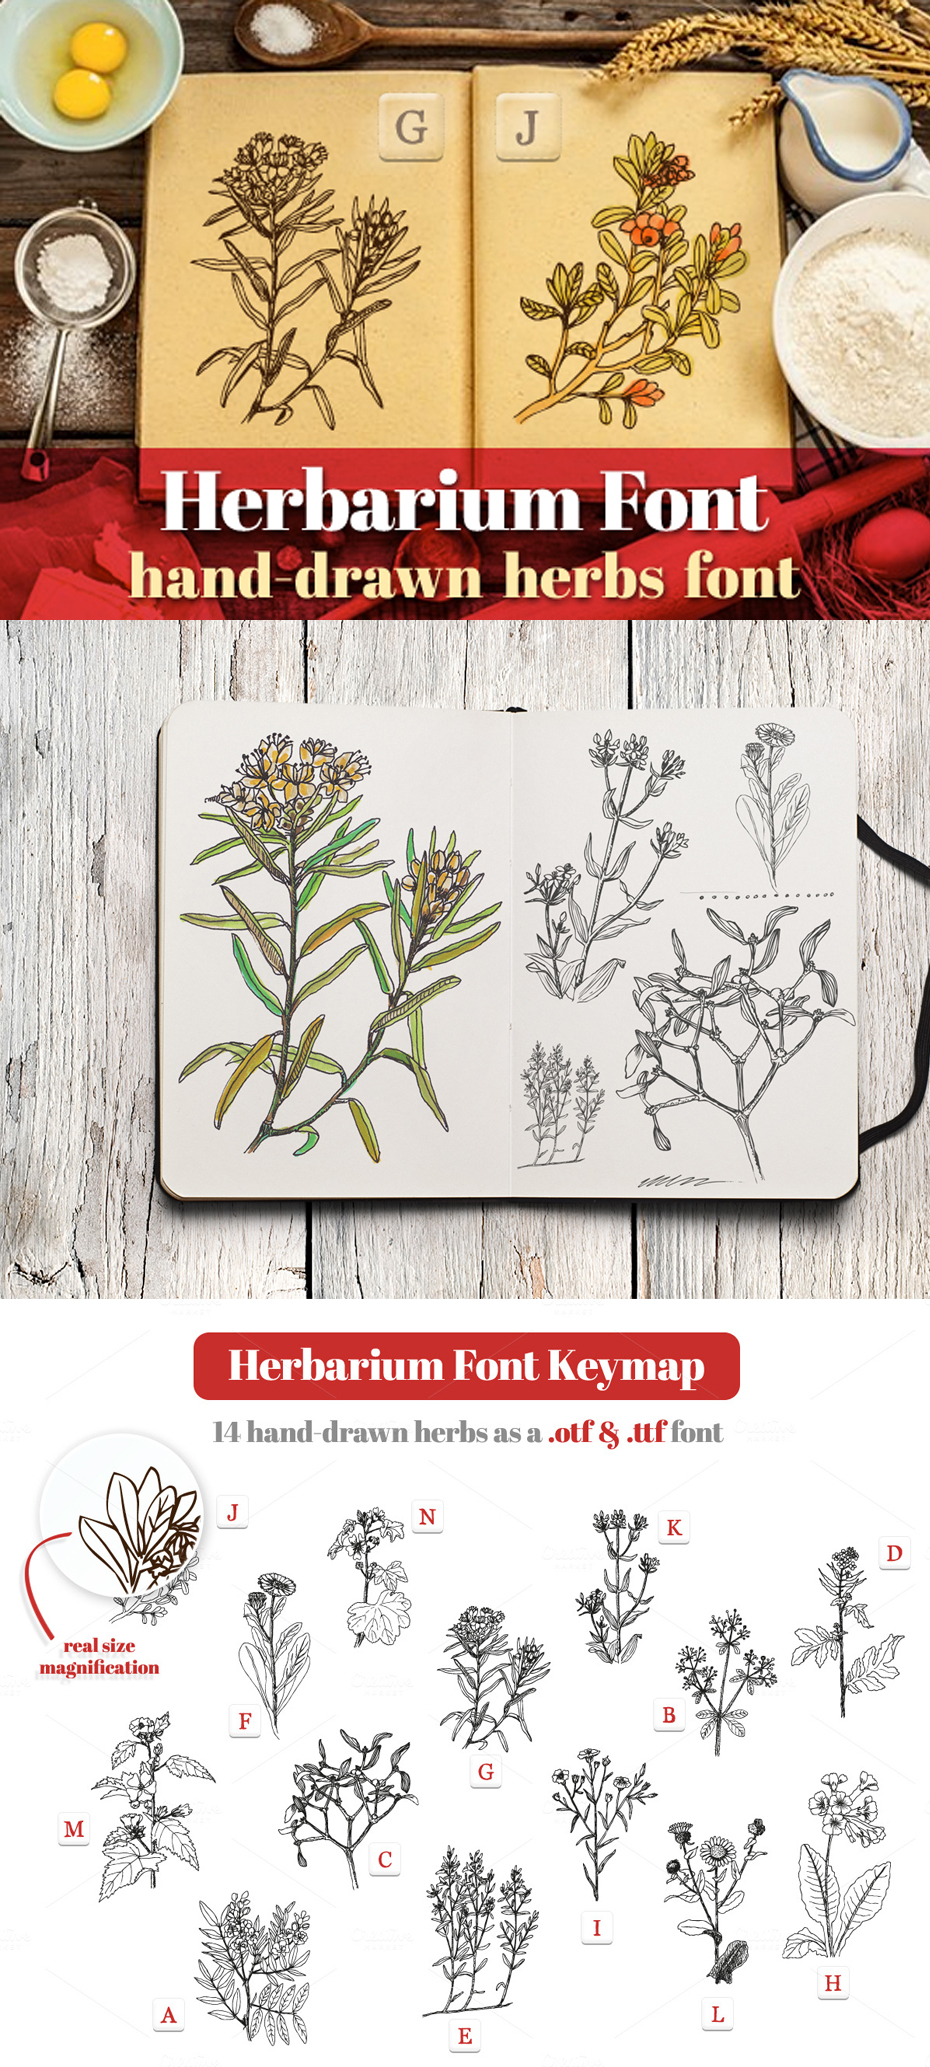 Herbarium font